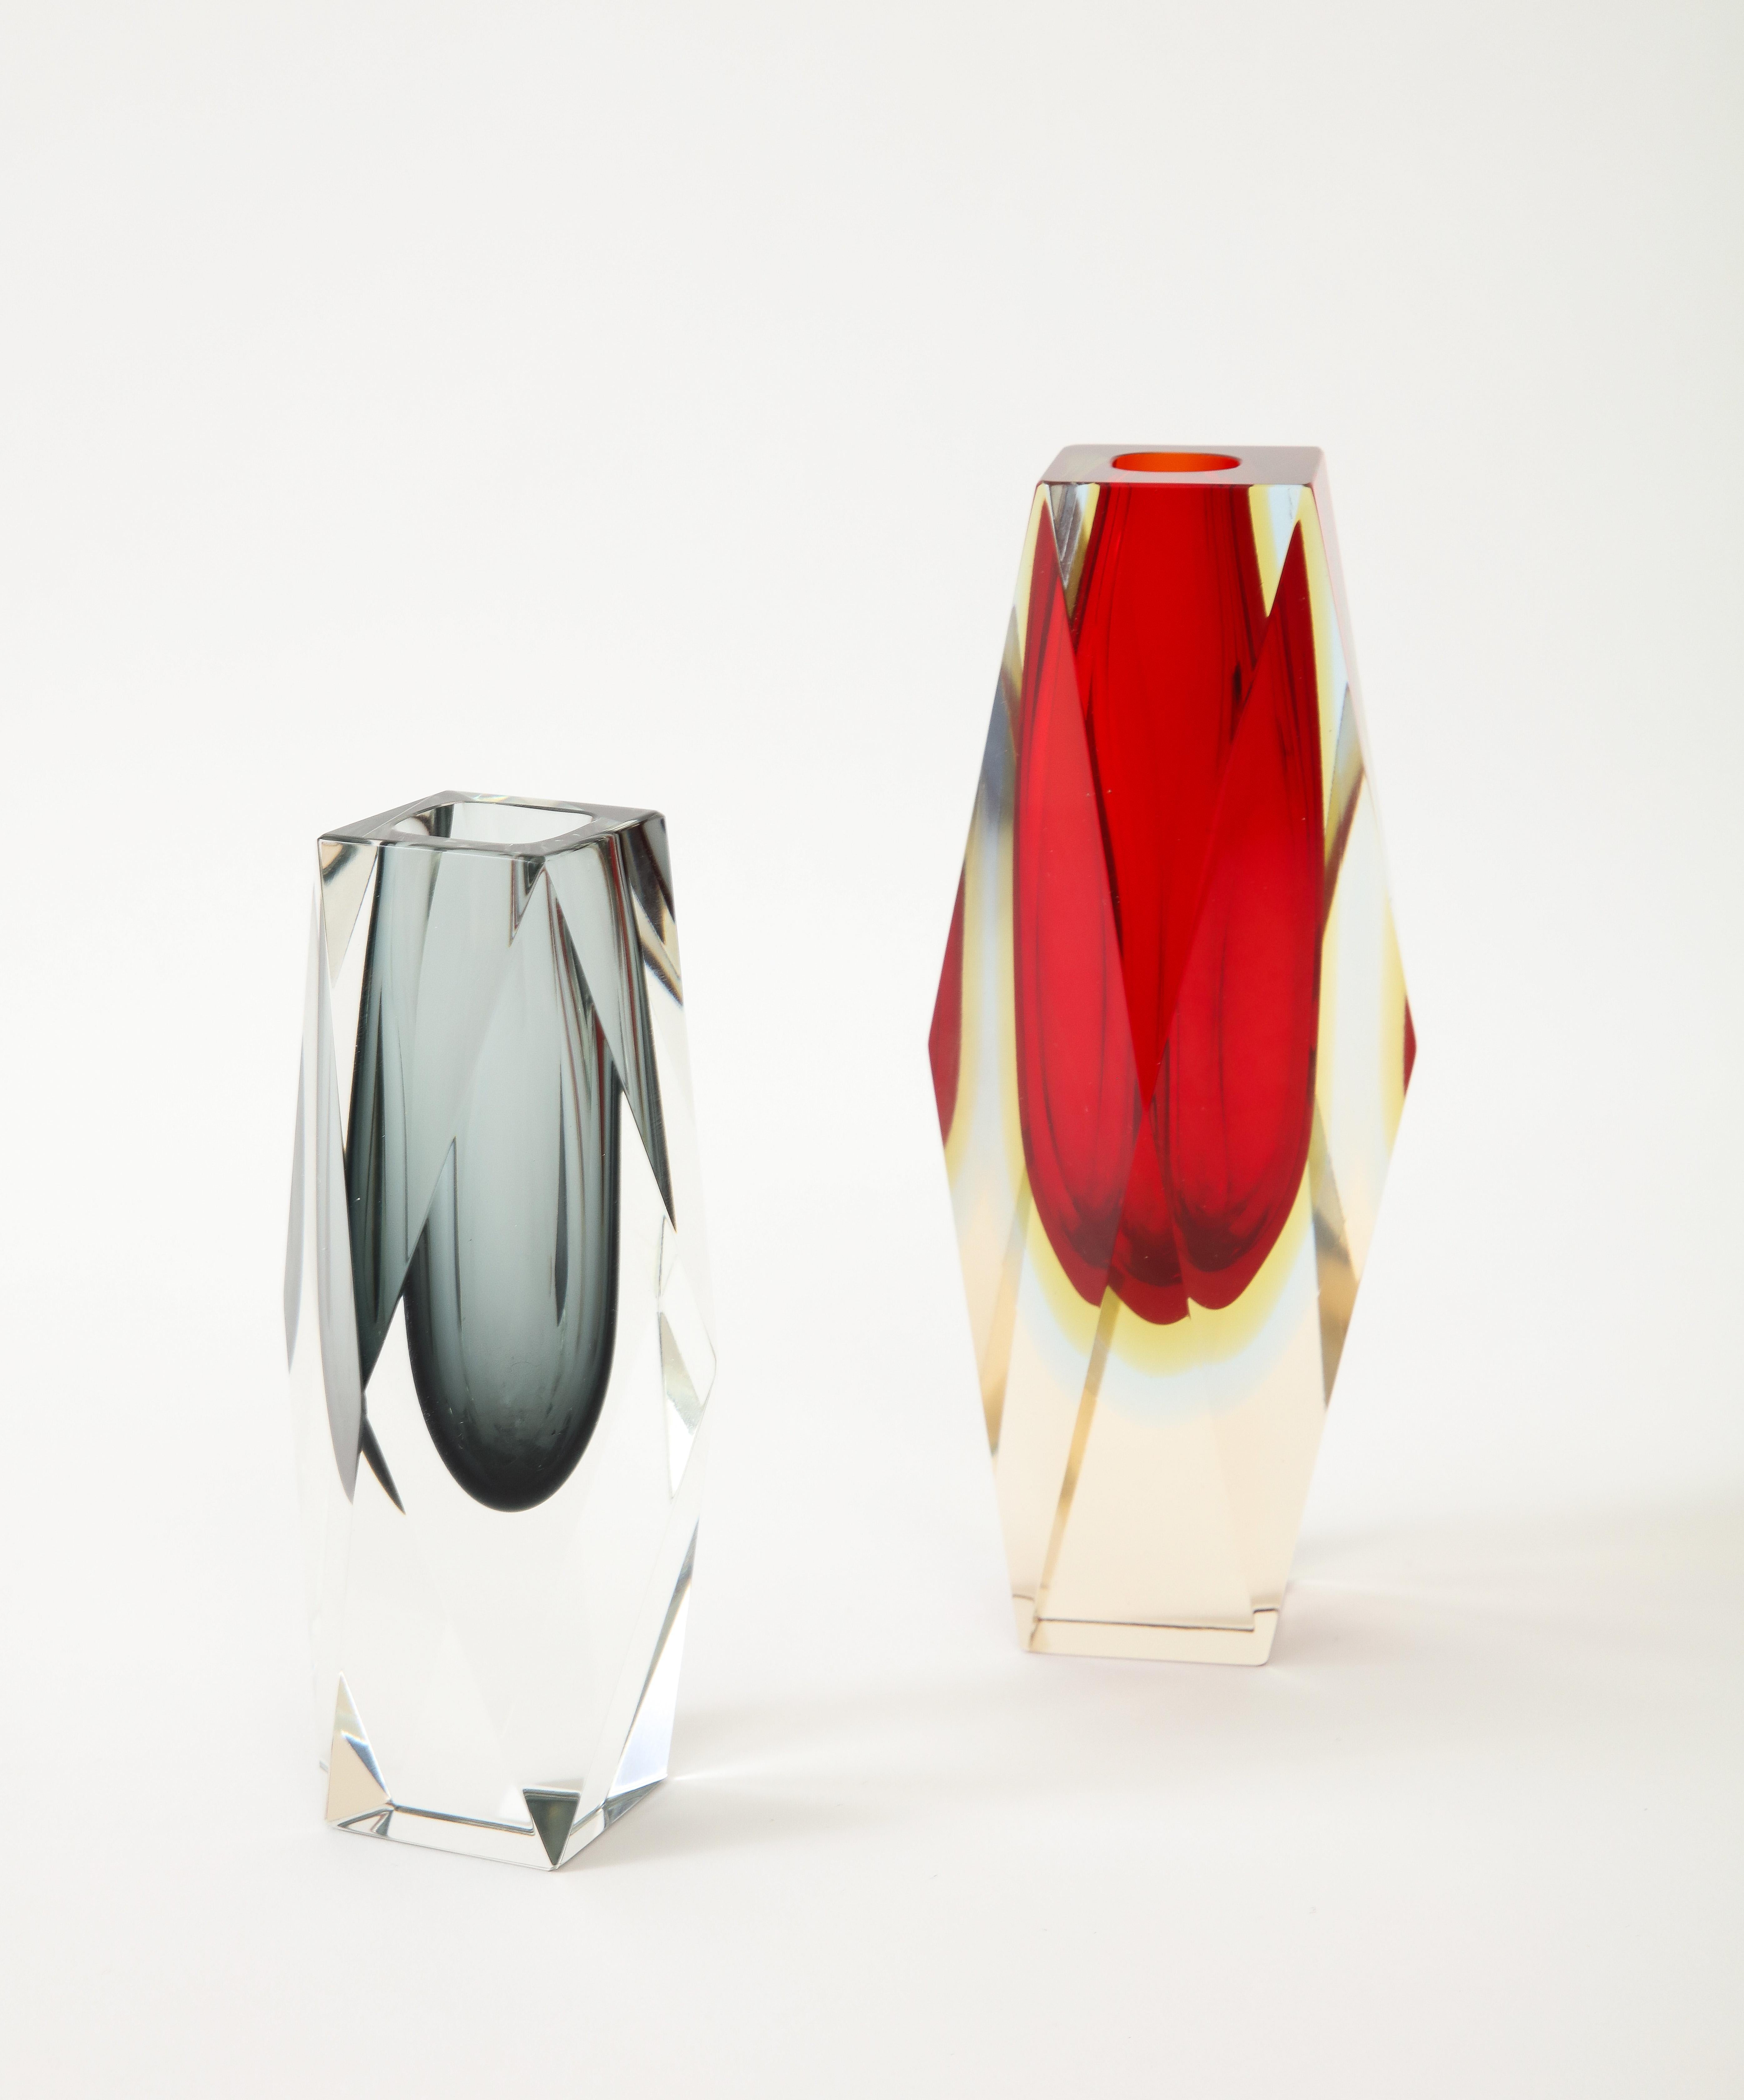 Satz von zwei 1970er Jahren  Vasen aus Murano-Glas, entworfen von Flavio Poli.
Die Vasen sind in der Sommerso-Technik hergestellt und haben einen wunderschönen Block
form zu ihnen.
Die rote Vase ist 8